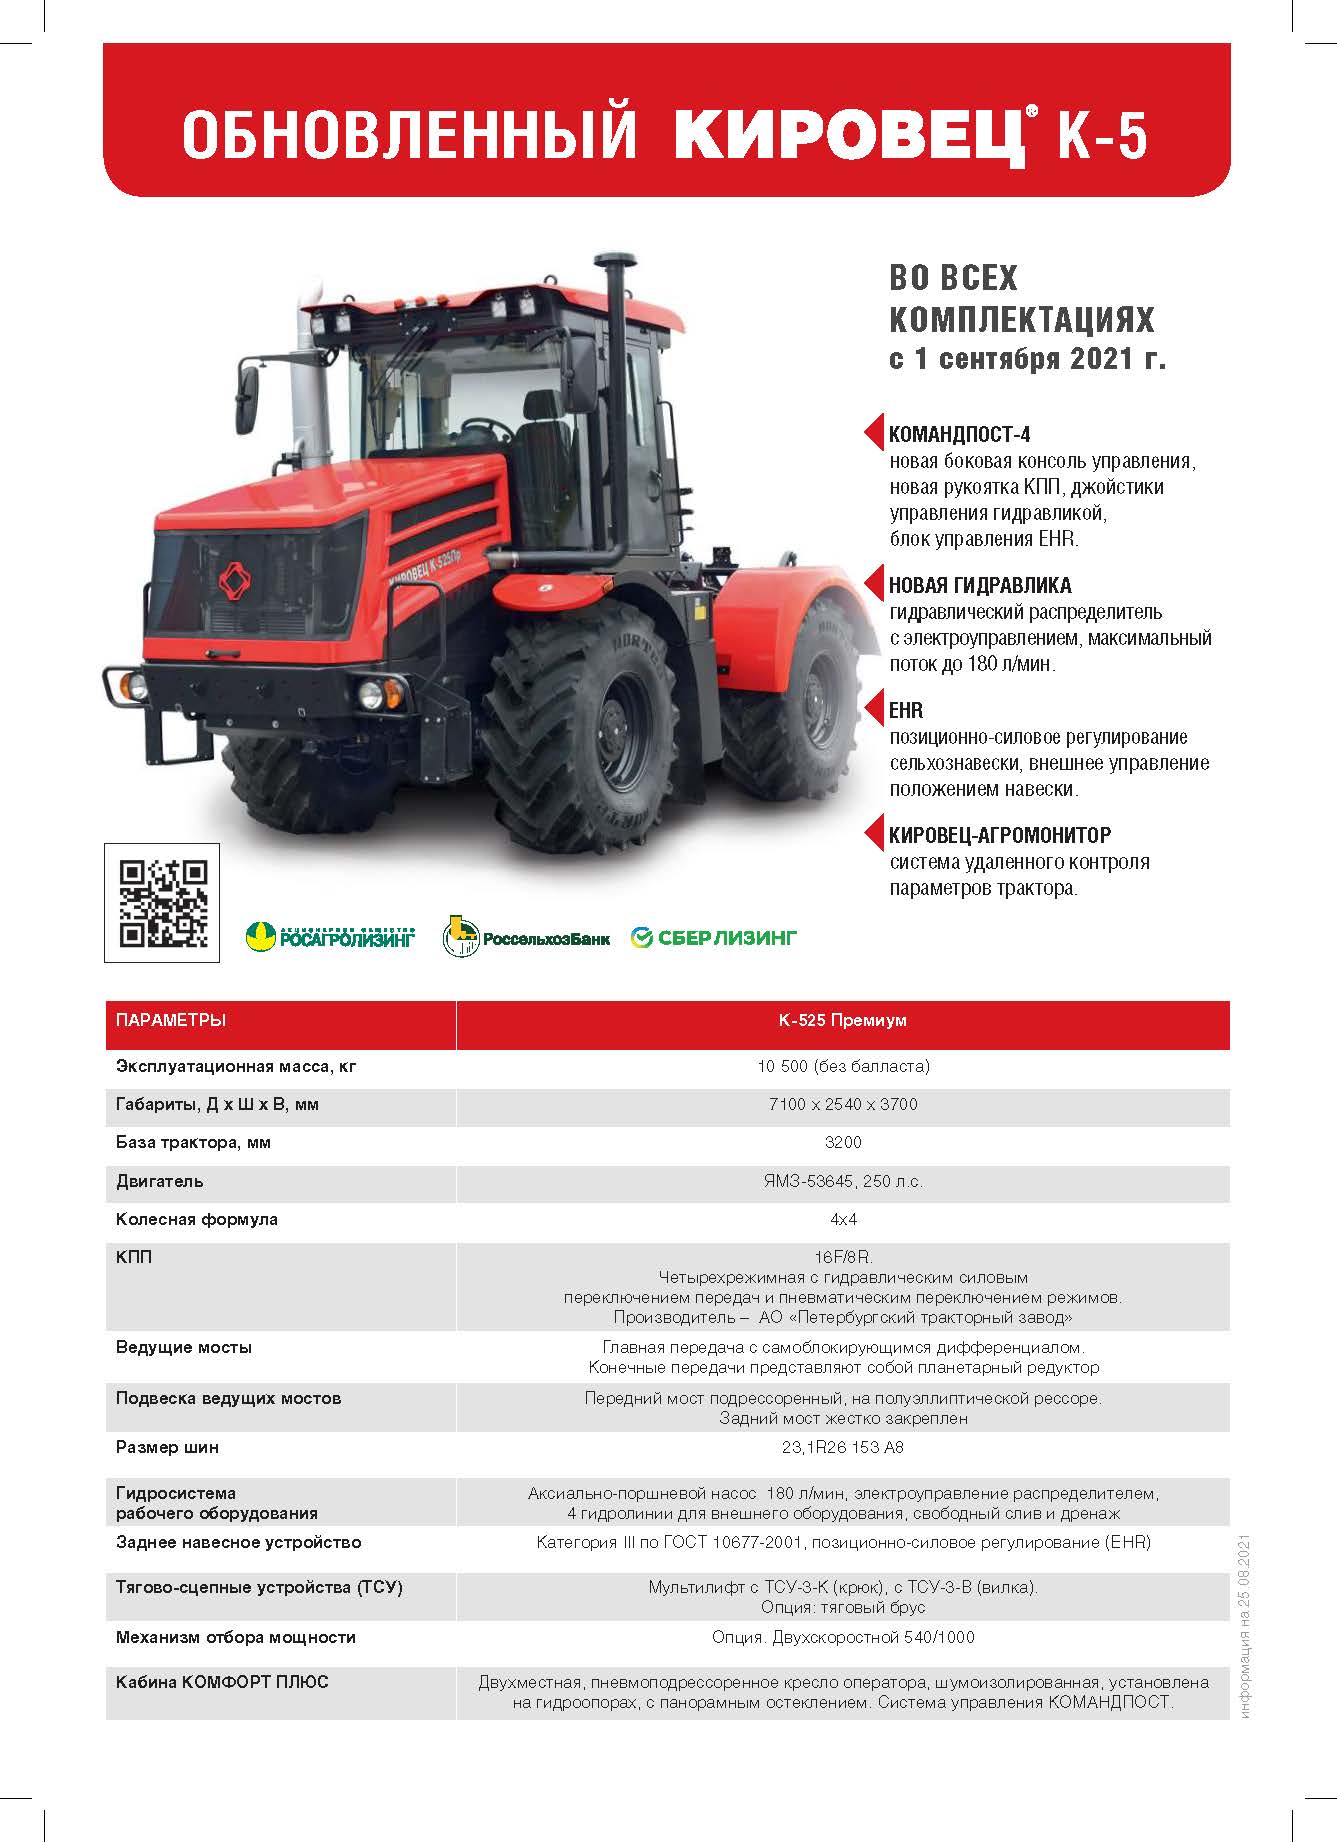 Т-70 трактор на колесах: технические характеристики и сколько весит - отзывы владельцев